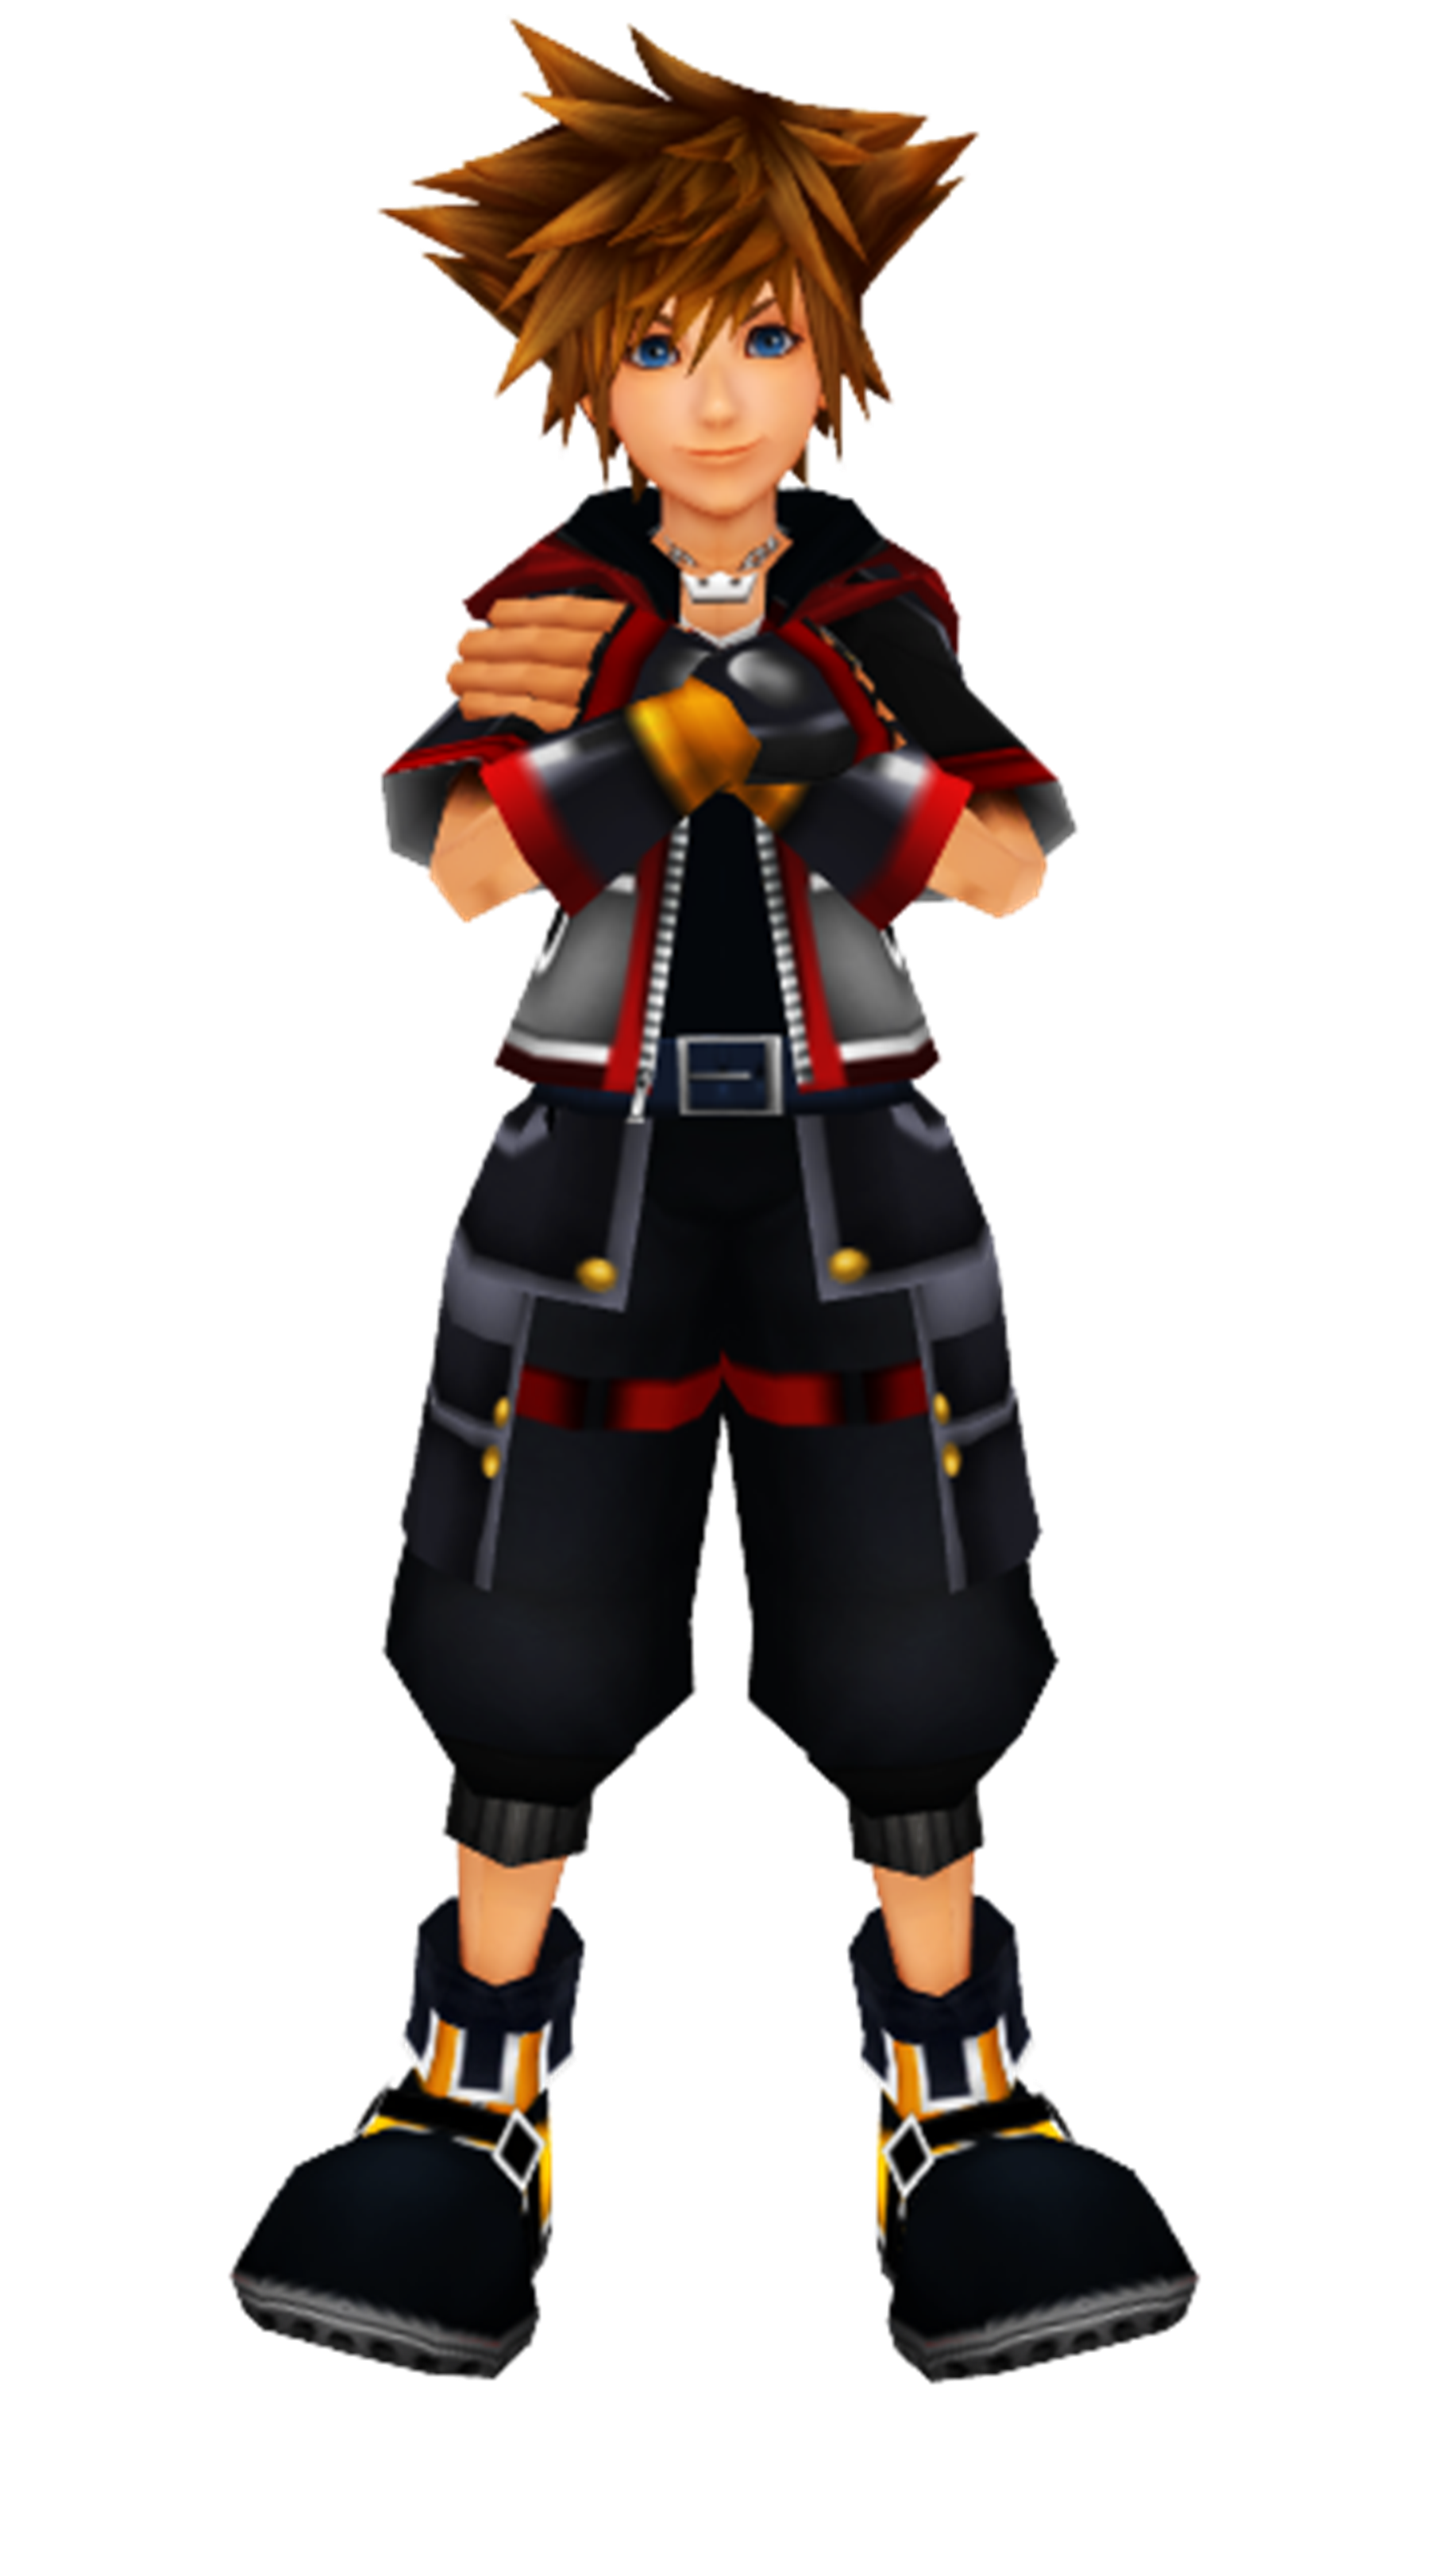 Kingdom Hearts Sora PNG Background Image